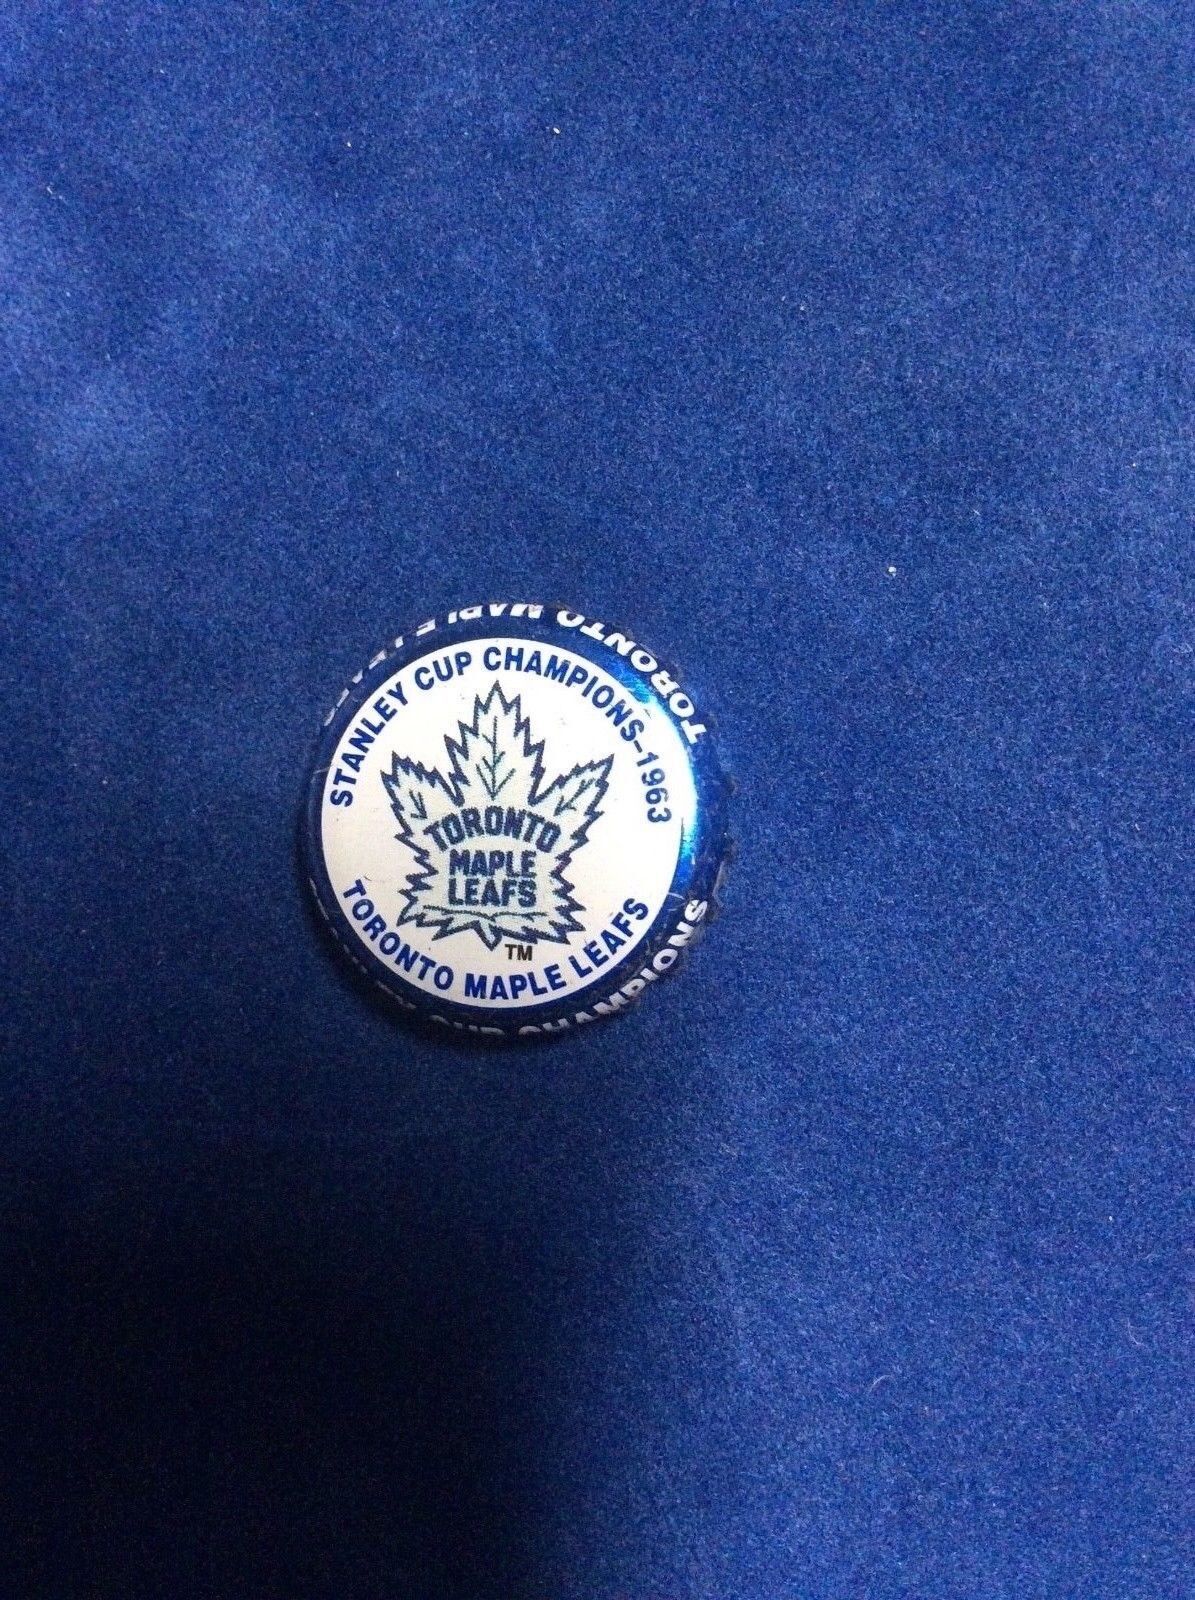 StanleyCupChamp Toronto MapleLeafs 1963 LimitedEdition NHL Labatts Beer Cap 2001